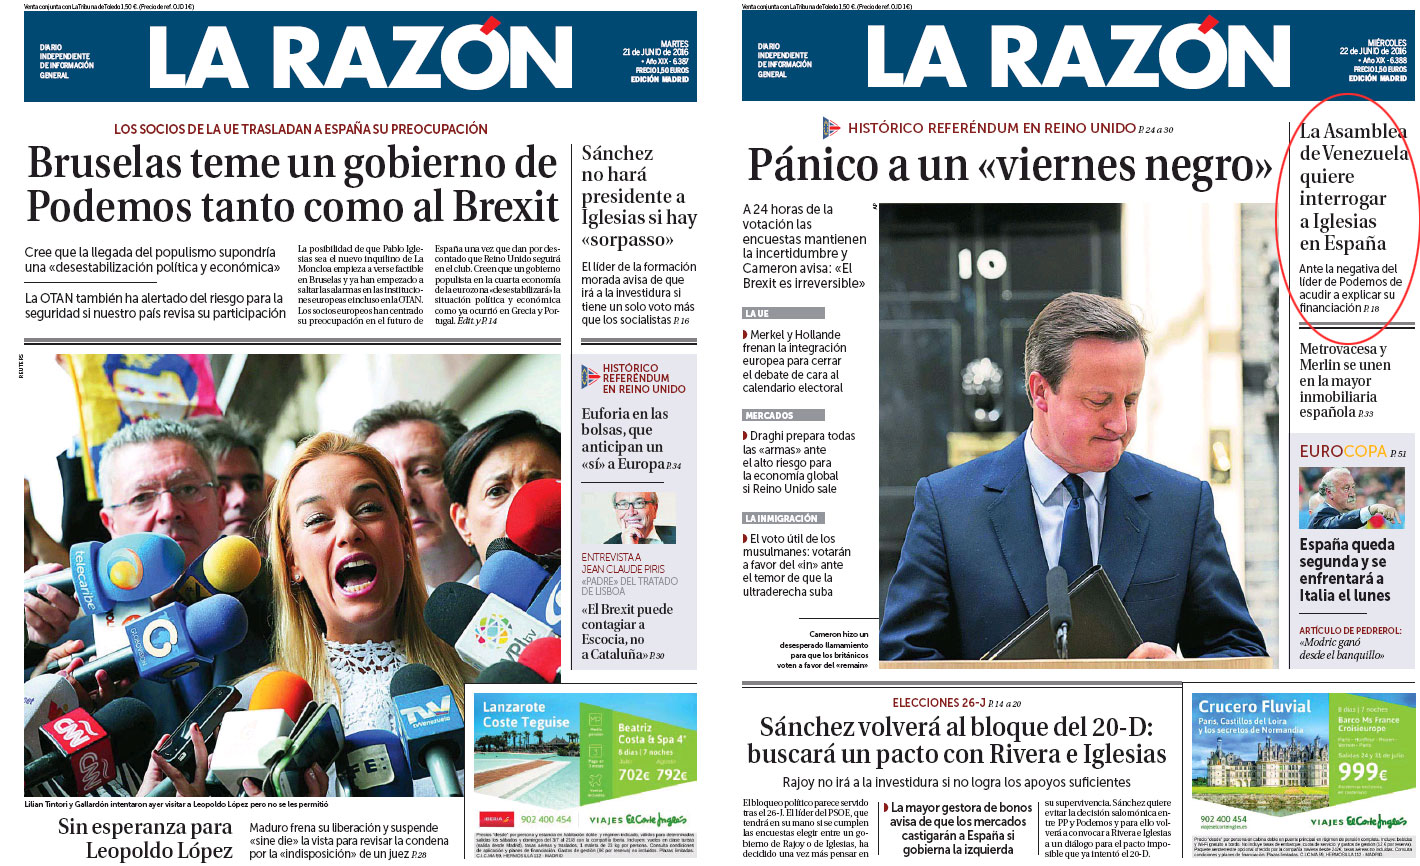 Marhuenda y sus portadas en campaña... Todo por el voto del miedo! Tras el 26J, Venezuela ya no interesa